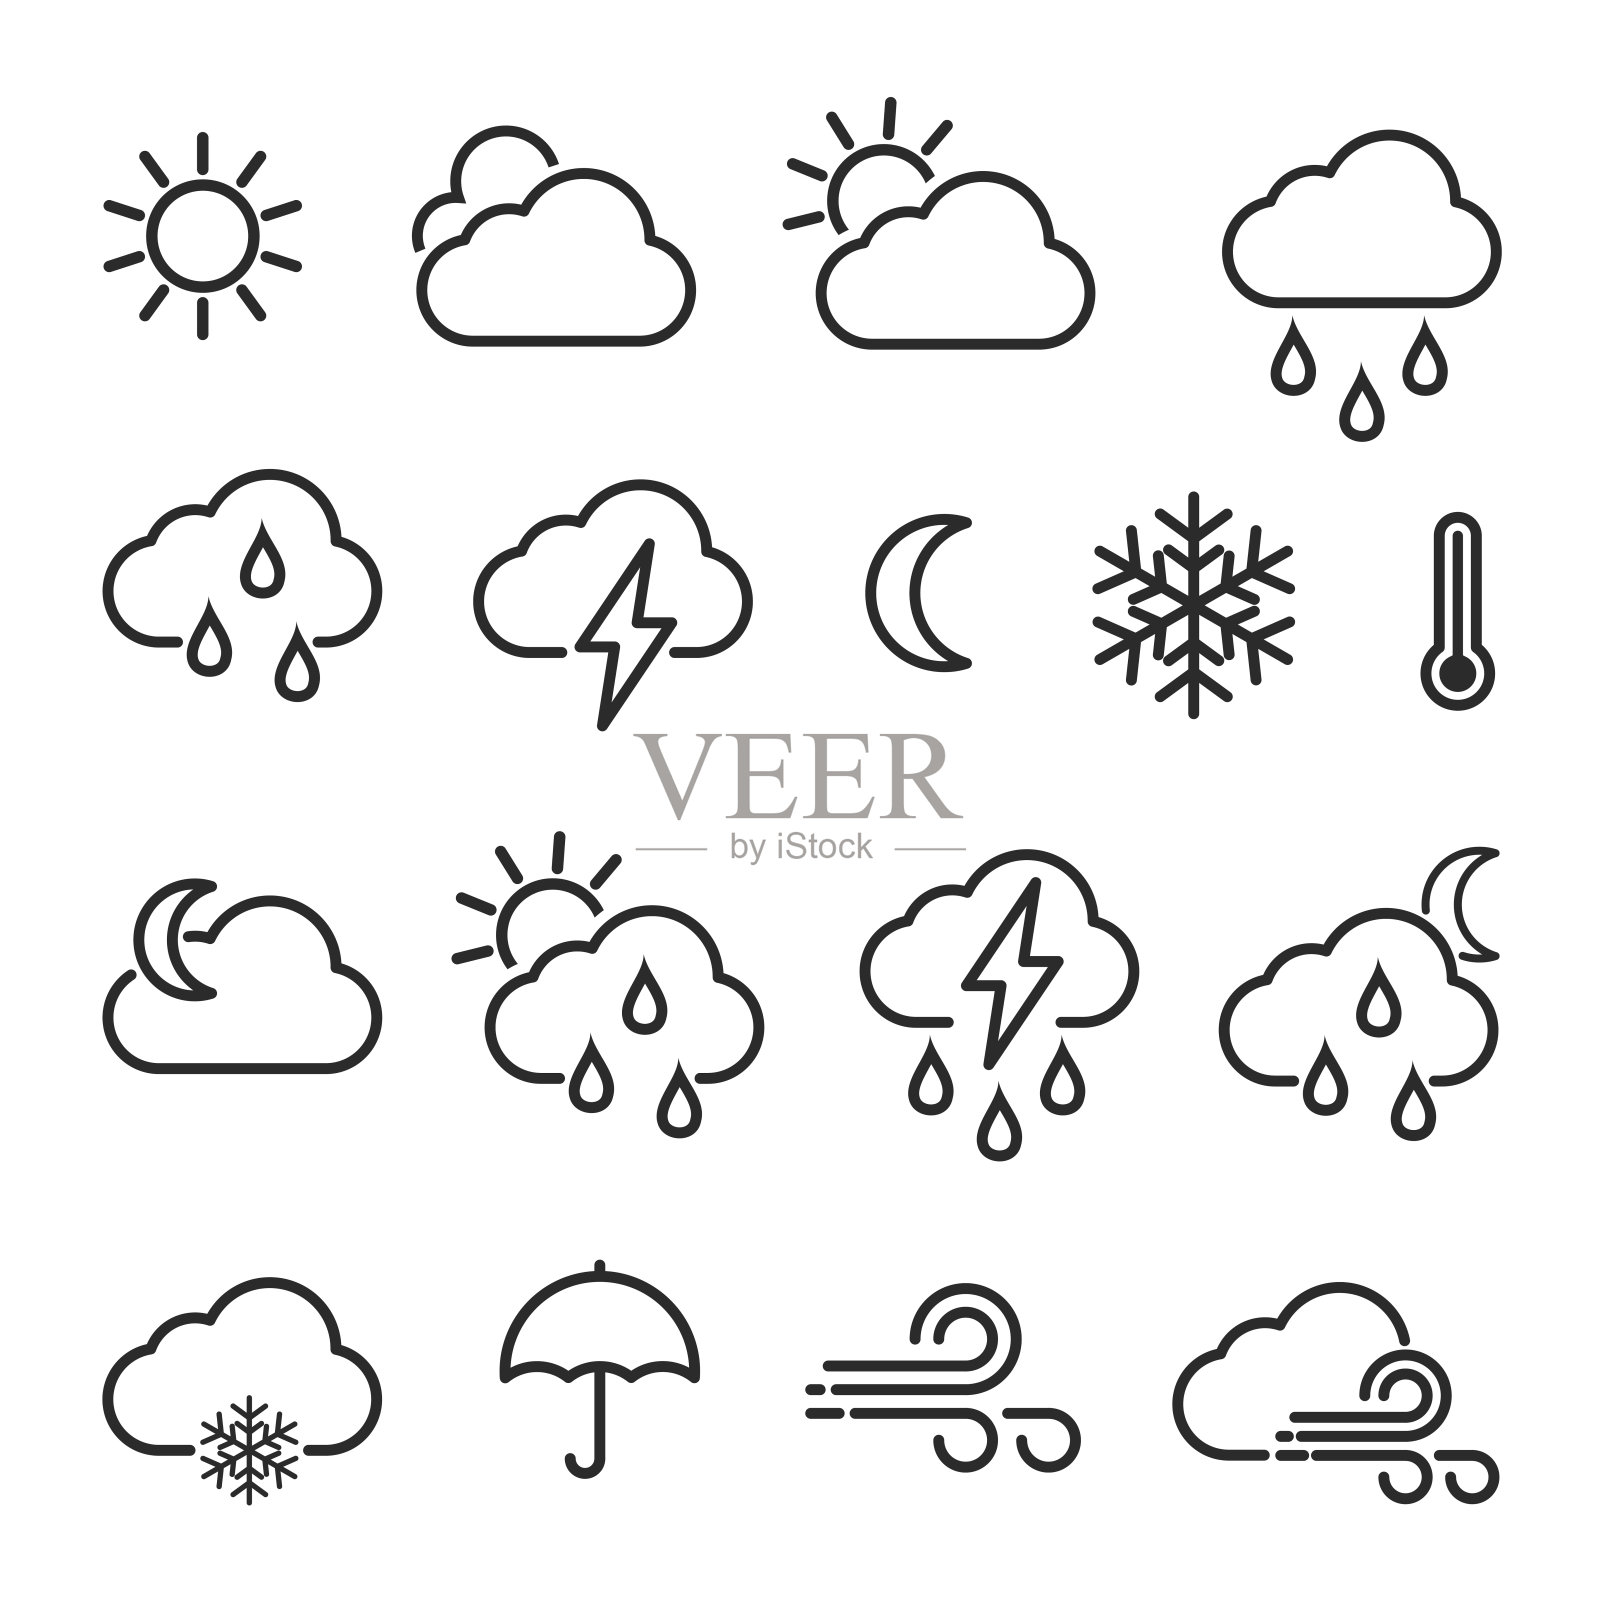 天气图标设置在线条风格。云，雪花，风，太阳，风暴矢量图标。气候标志符号。插画图片素材